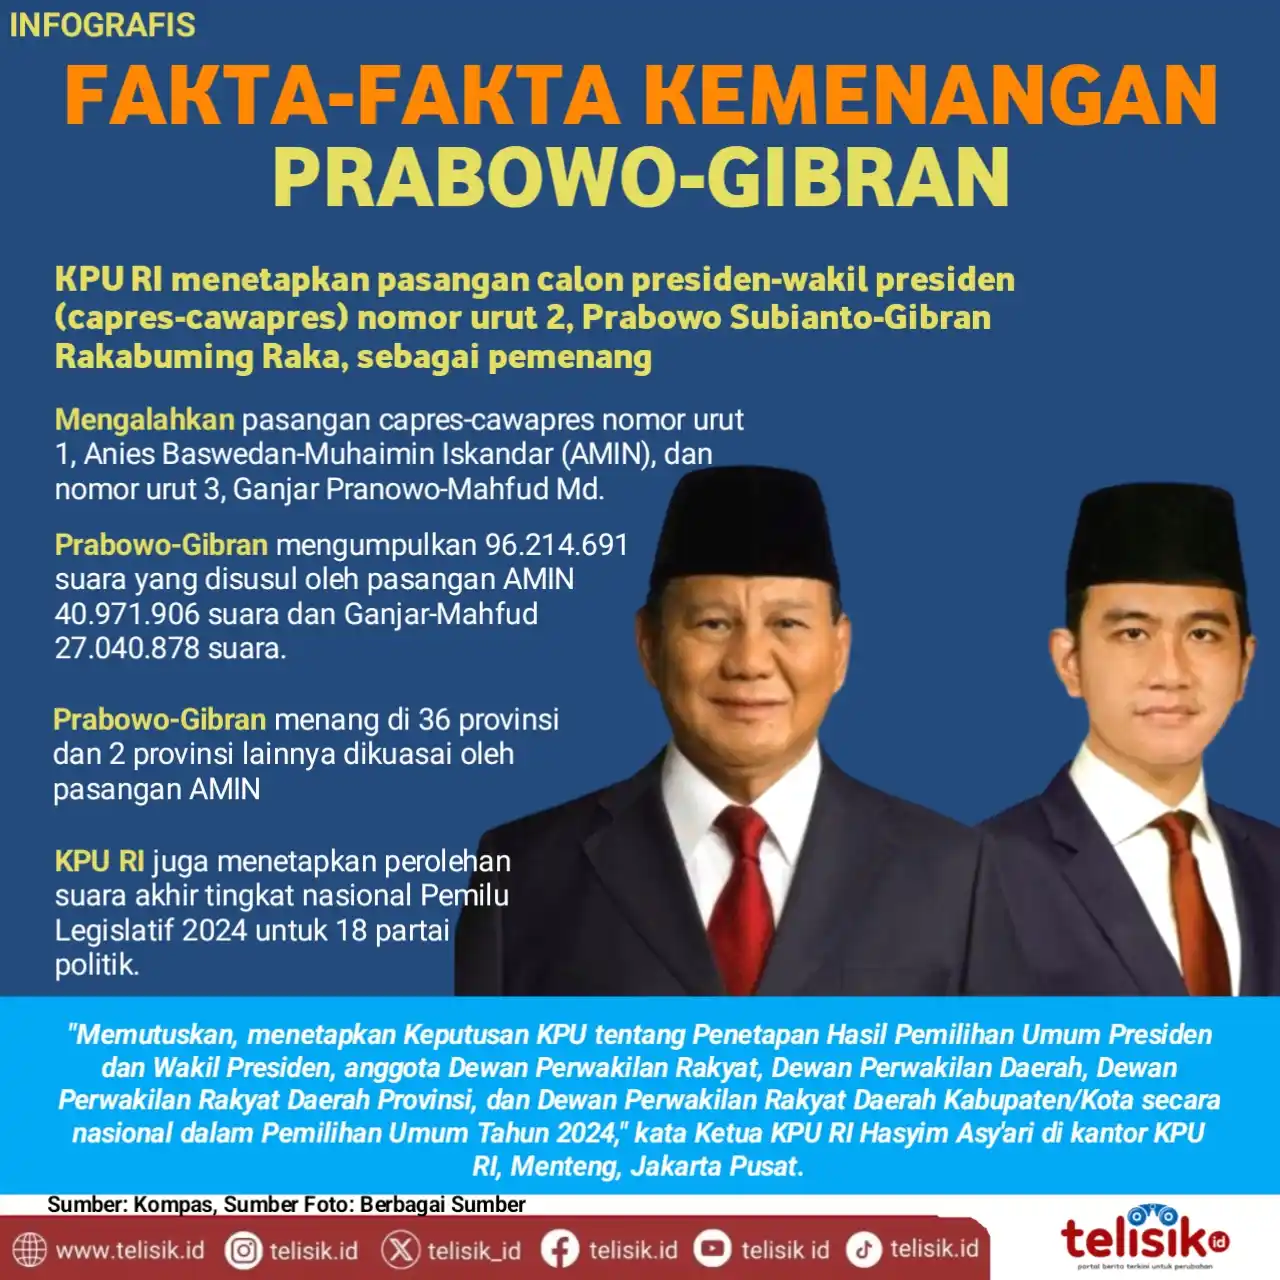 Infografis: Fakta-Fakta Kemenangan Prabowo-Gibran